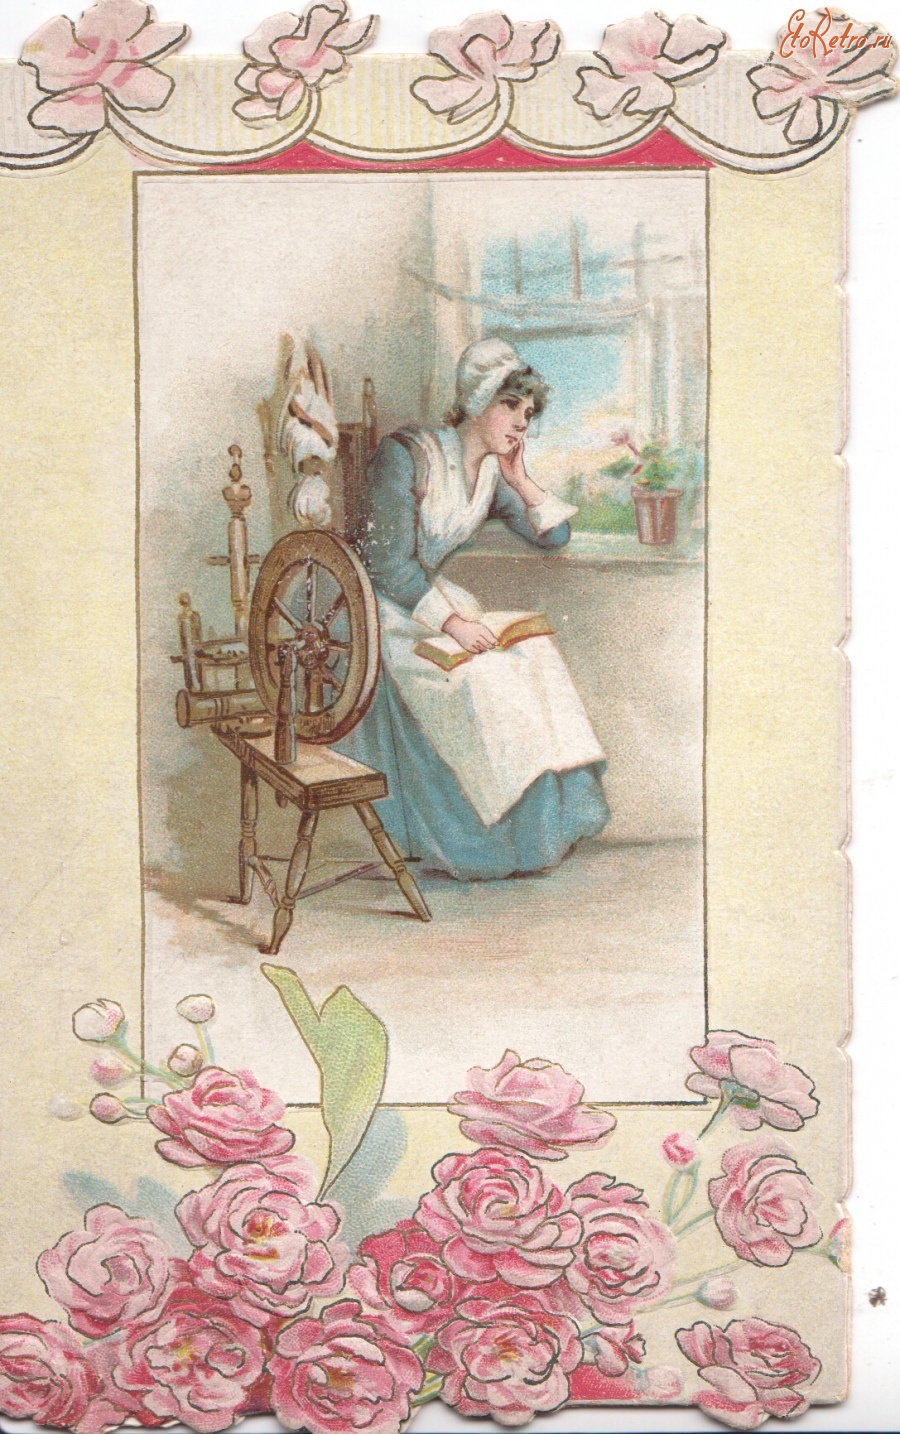 Ретро открытки - Девушка за прялкой у открытого окна